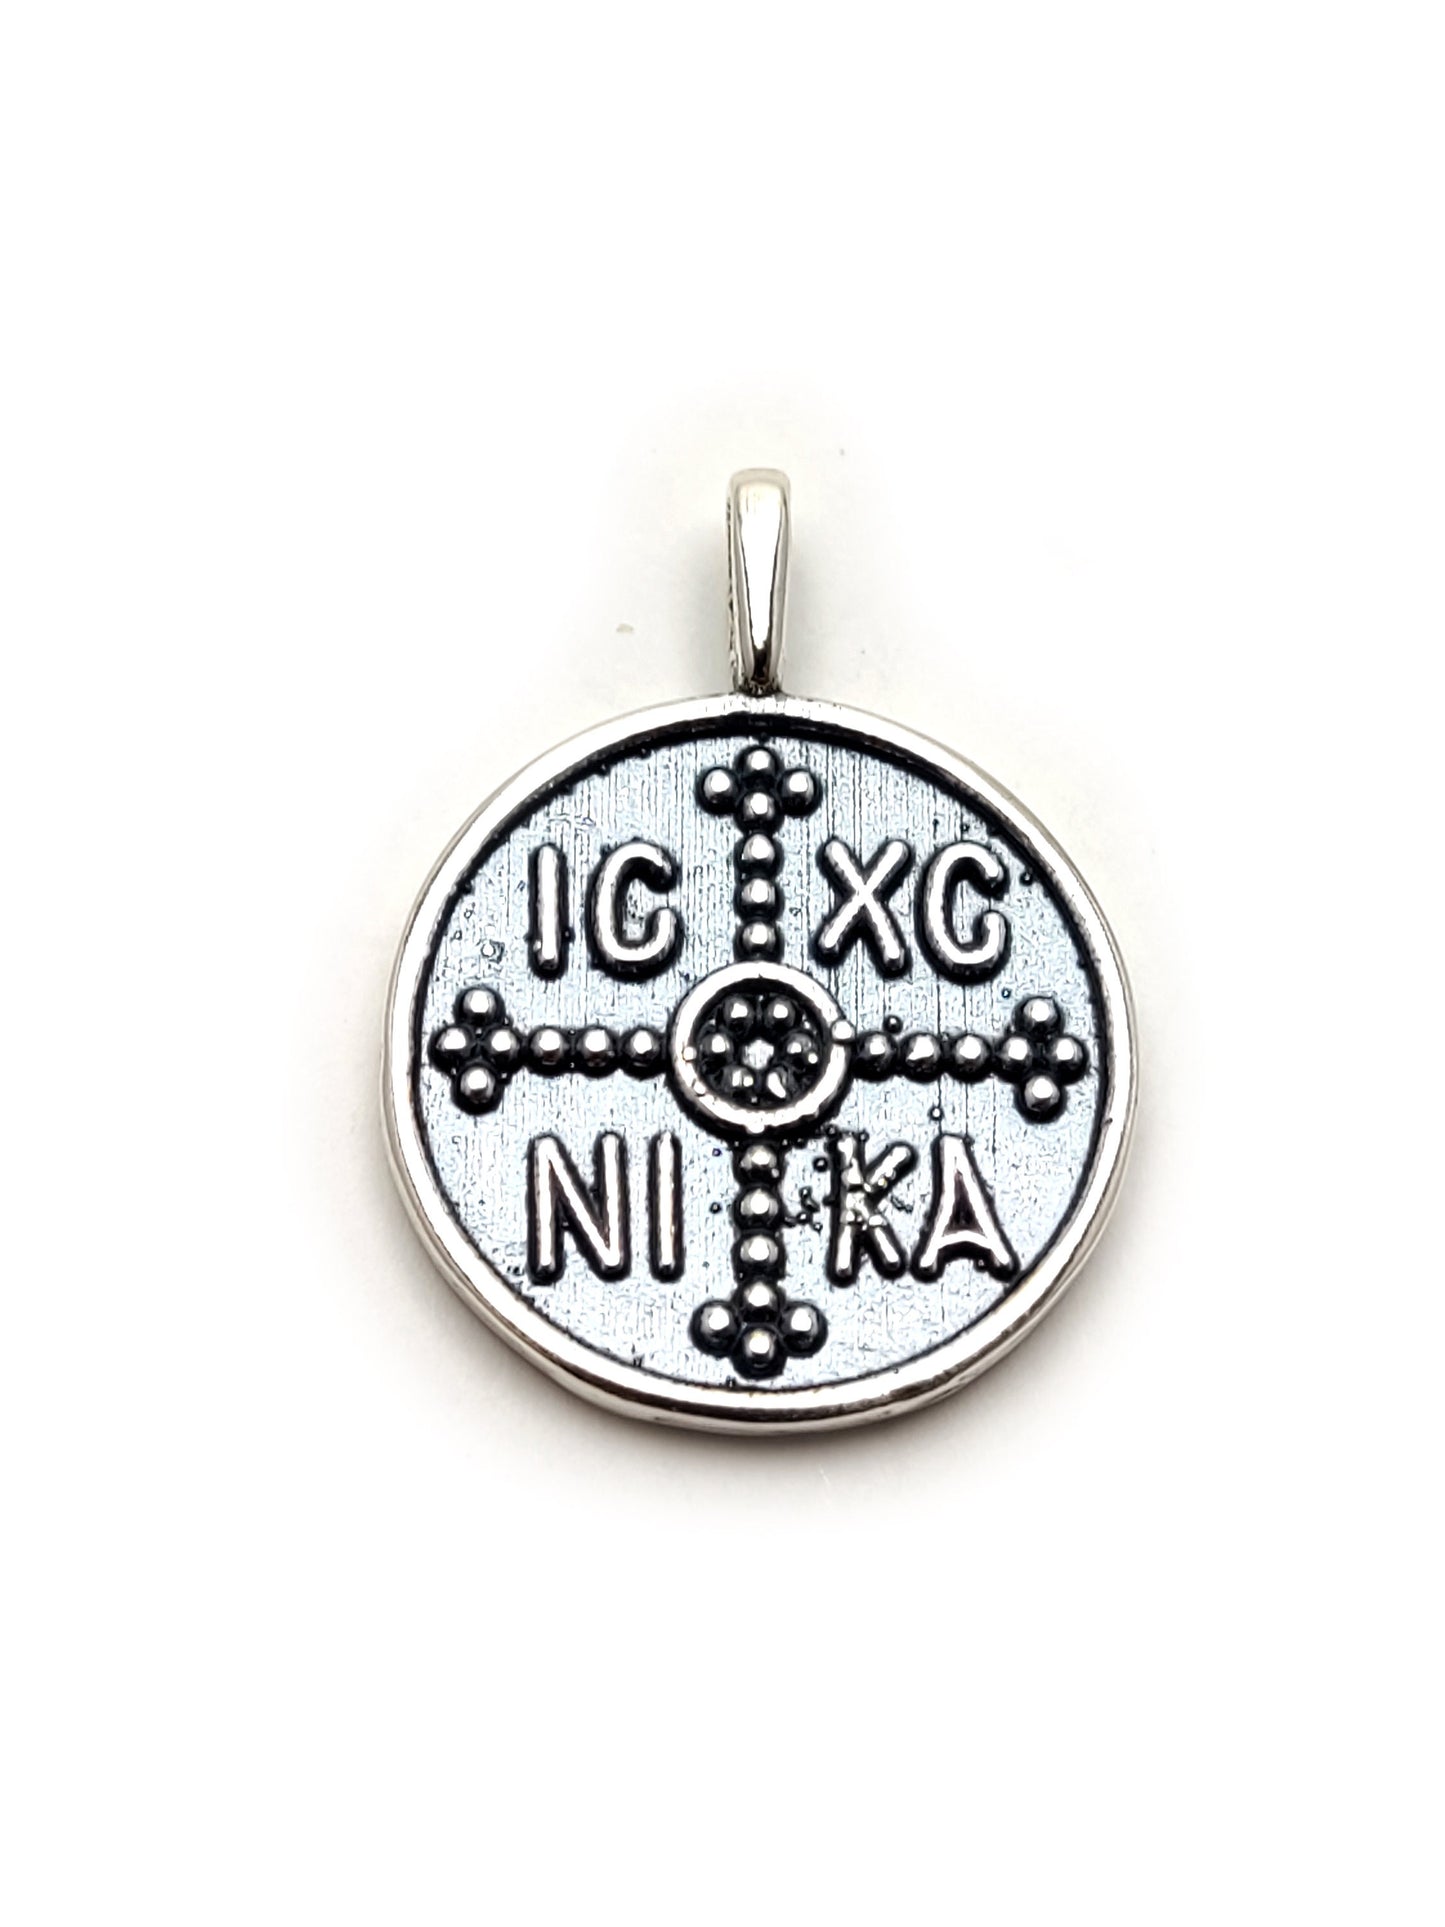 Croix grecque byzantine en argent sterling 925 faite à la main, pièce de monnaie IC-XC-NIKA Konstantinato 19 mm, porte-bonheur, hommes femmes enfants croix